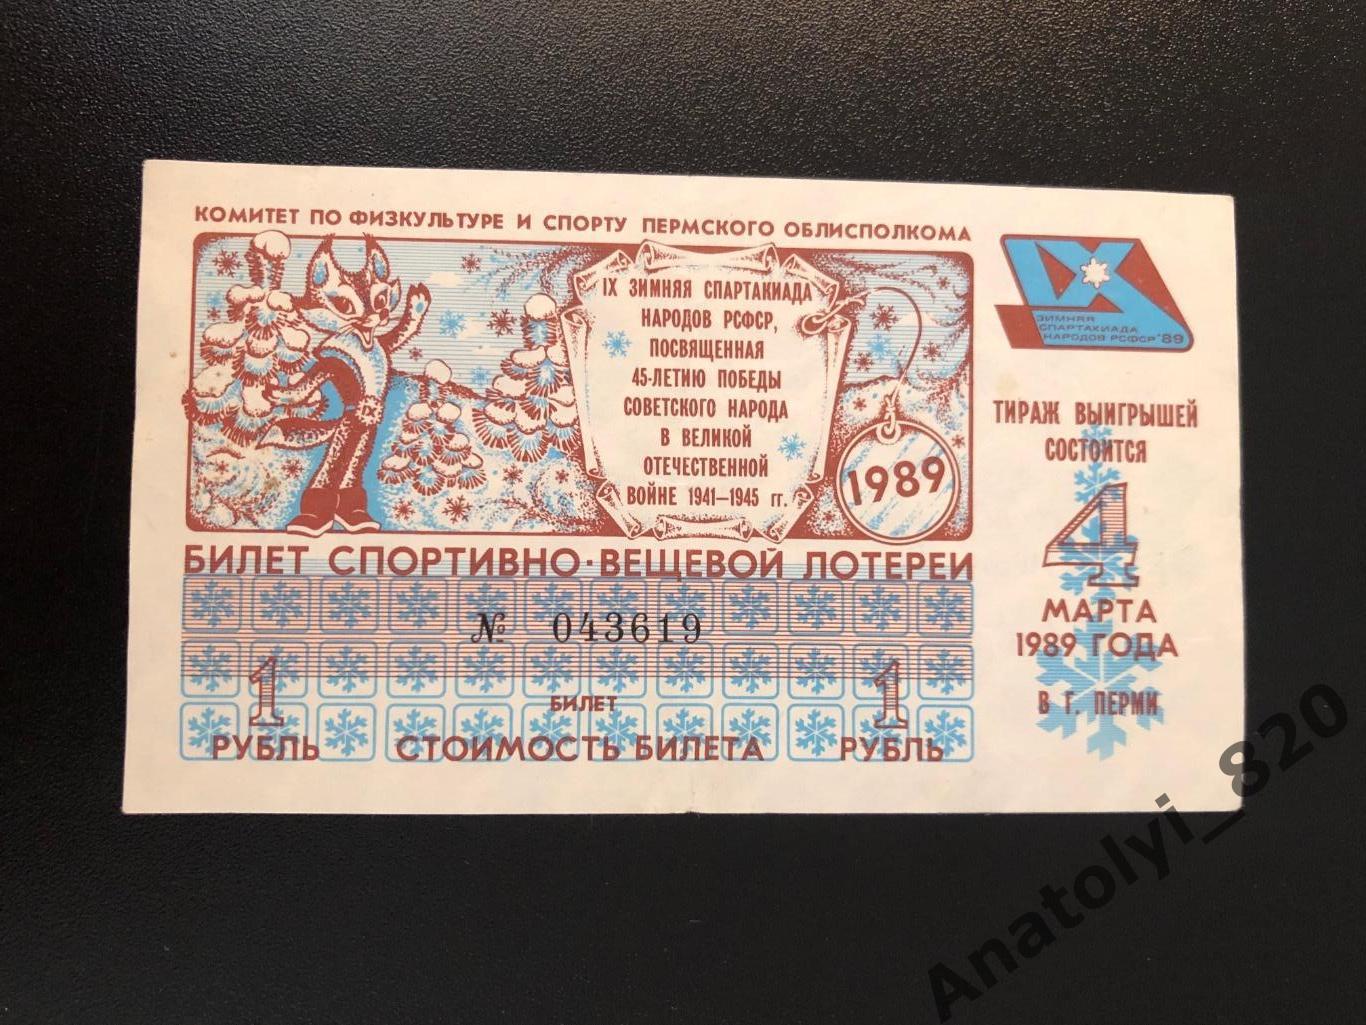 Пермь. Билет спортивно-вещевой лотереи от 04.03.1989